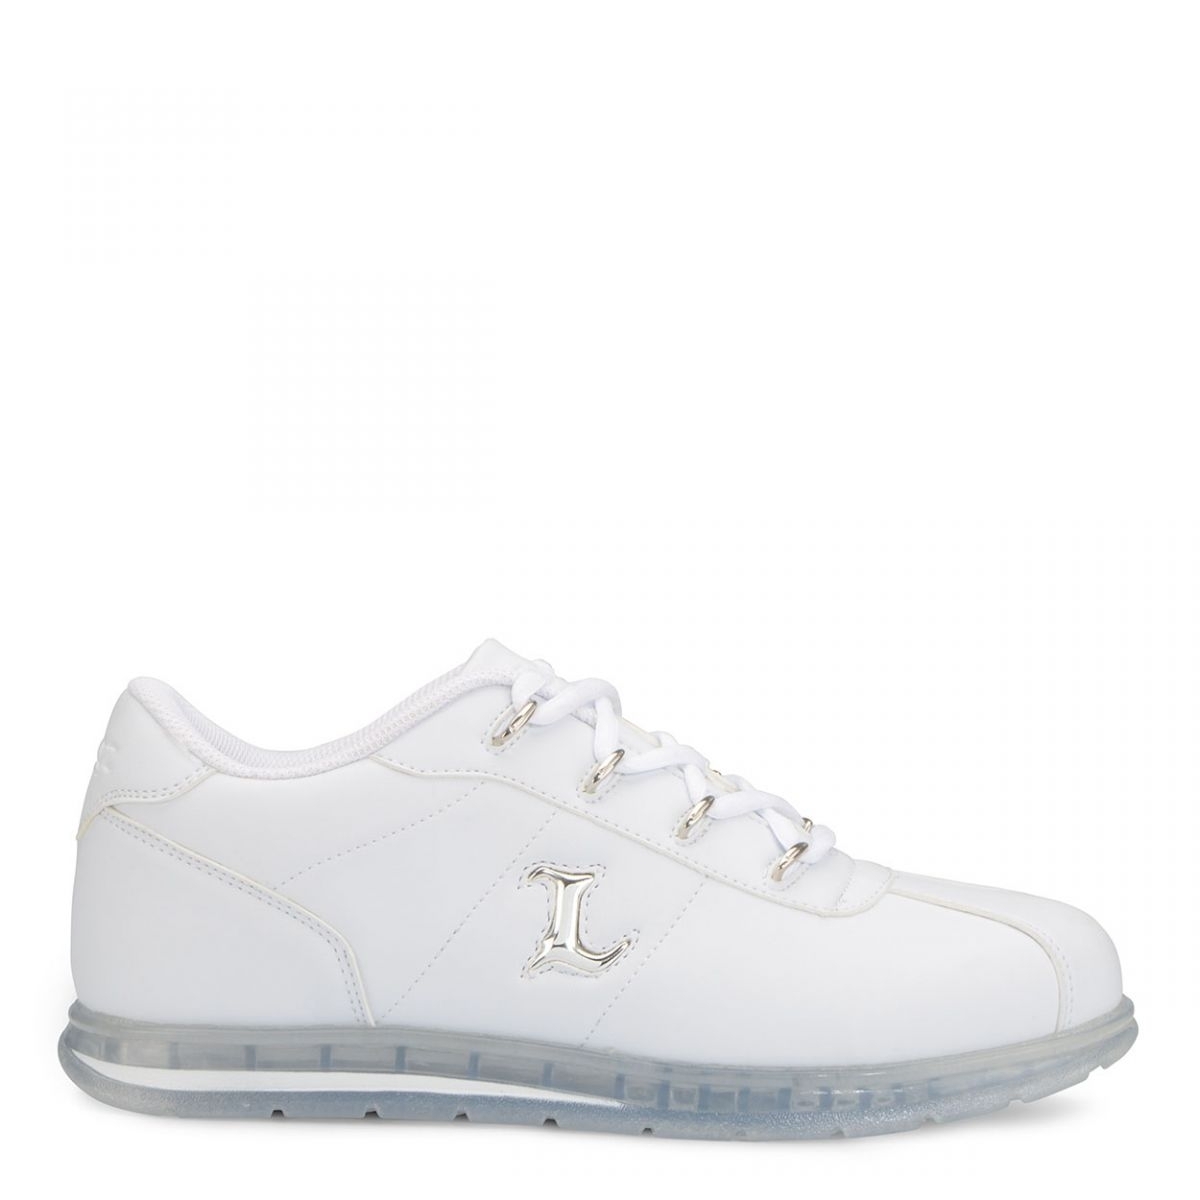 Lugz Men's Zrocs DX Sneaker White/Clear - MZRCIV-1601 White/Clear - White/Clear, 8